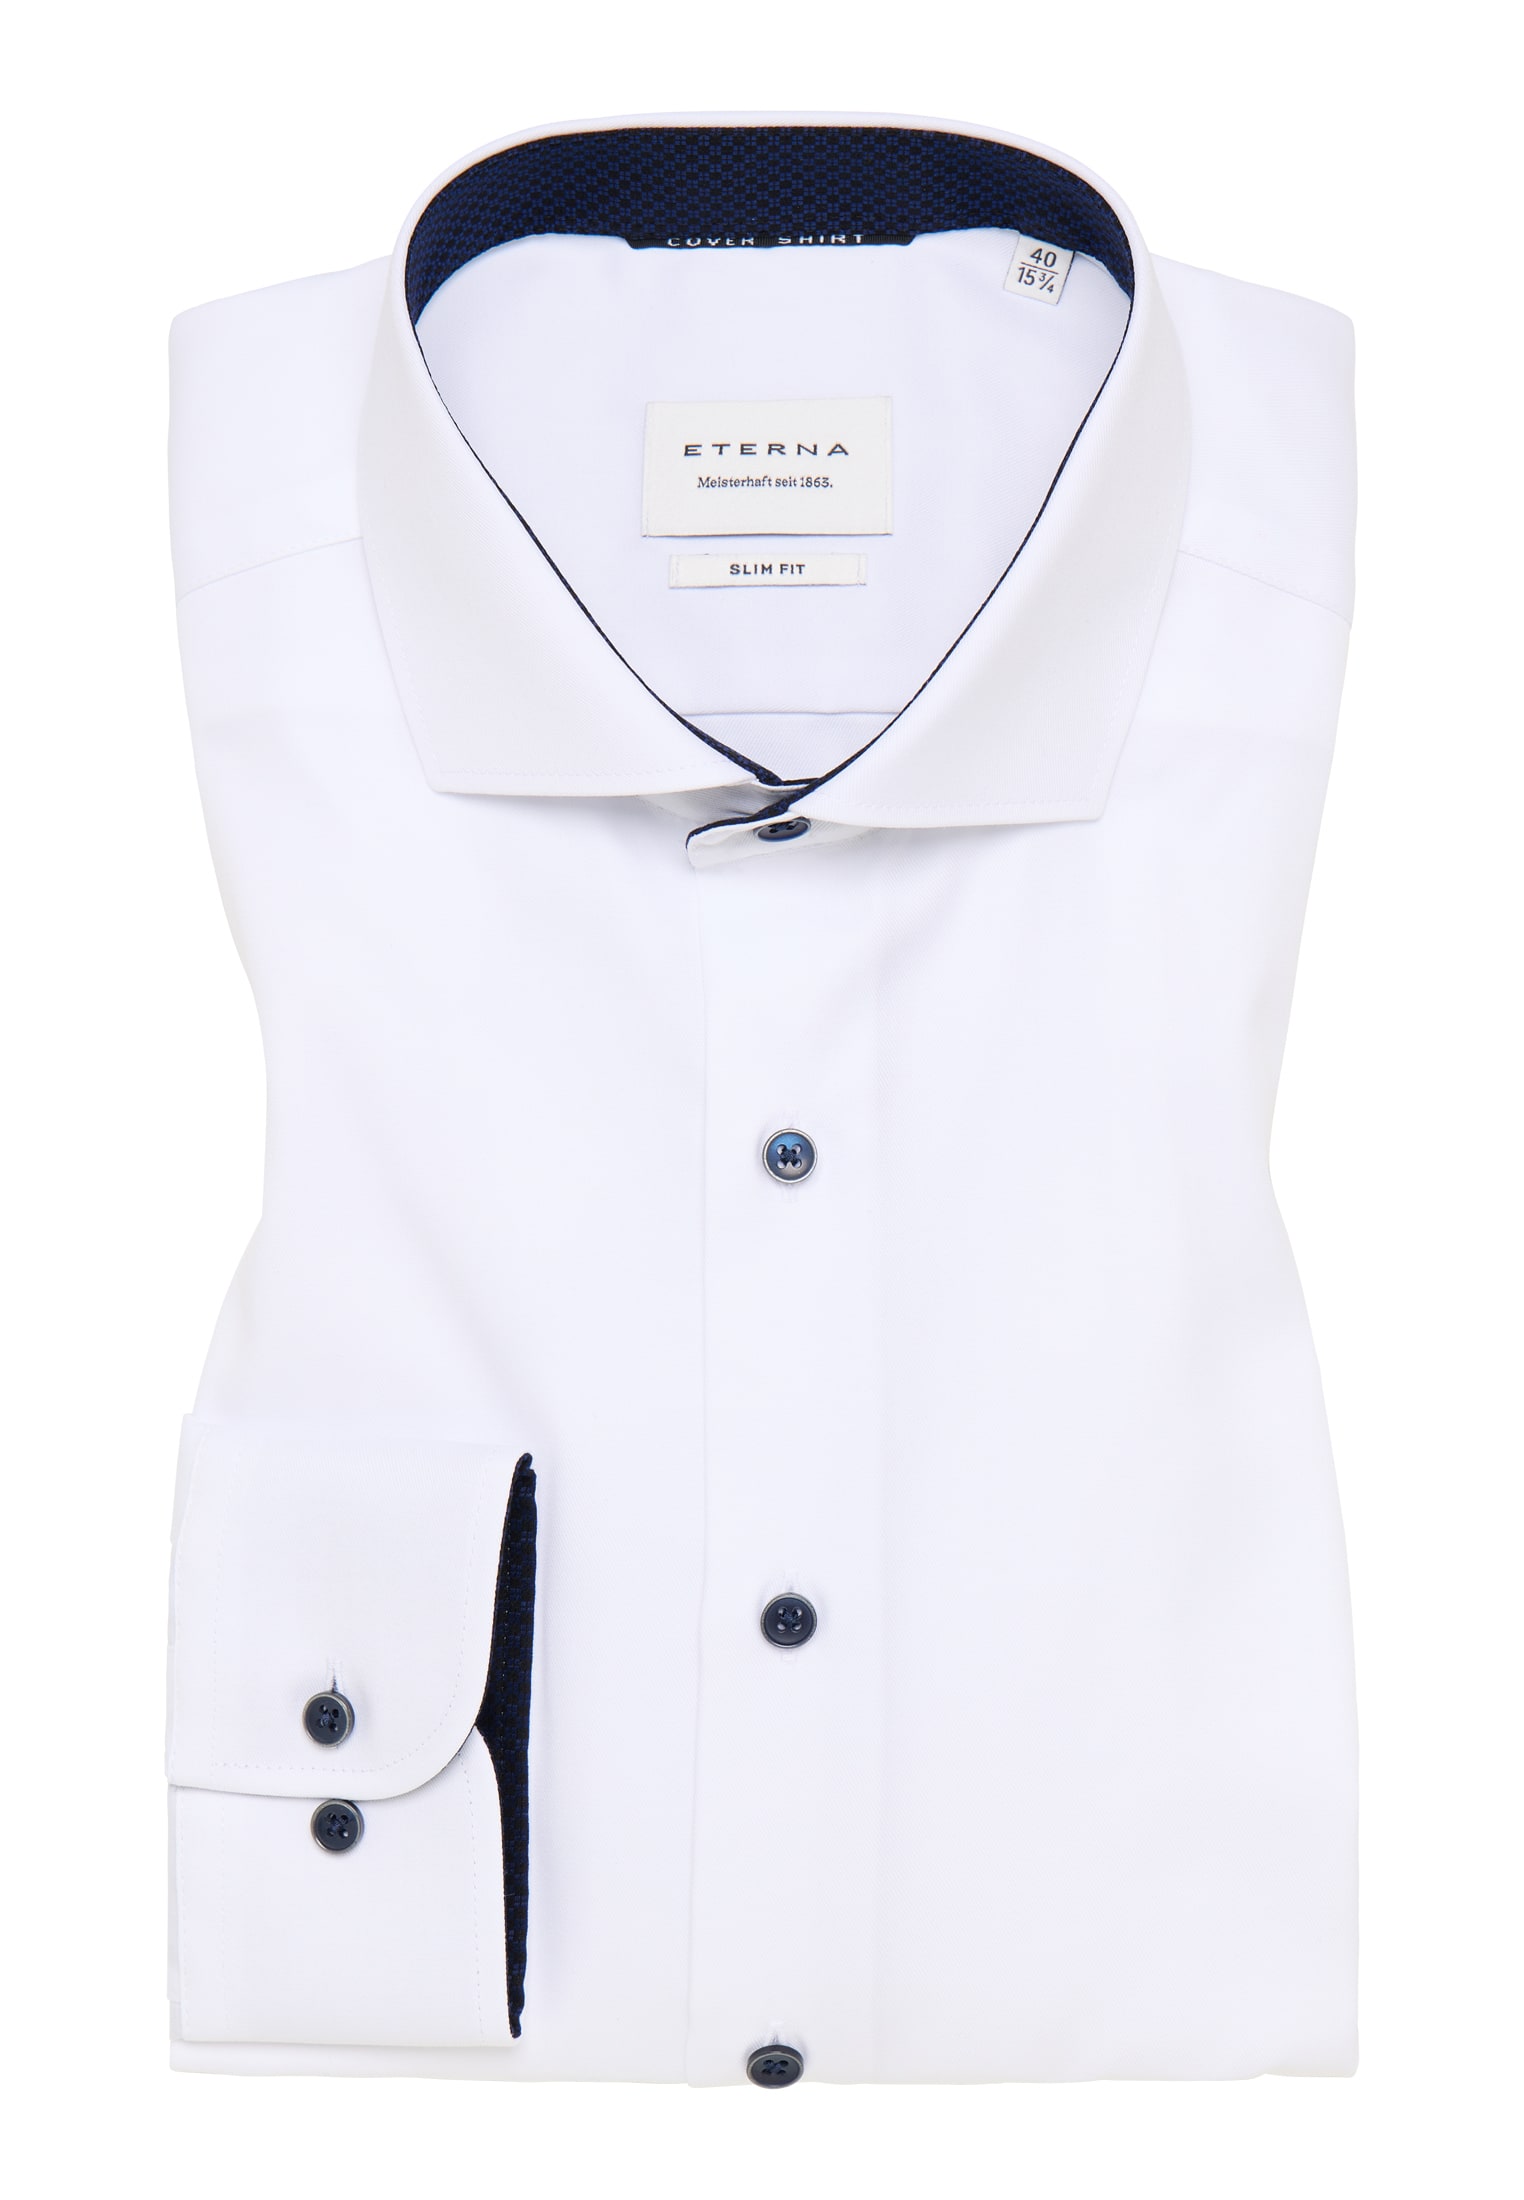 SLIM FIT Cover | weiß | Shirt 1SH05553-00-01-41-1/1 Langarm weiß in 41 | unifarben 